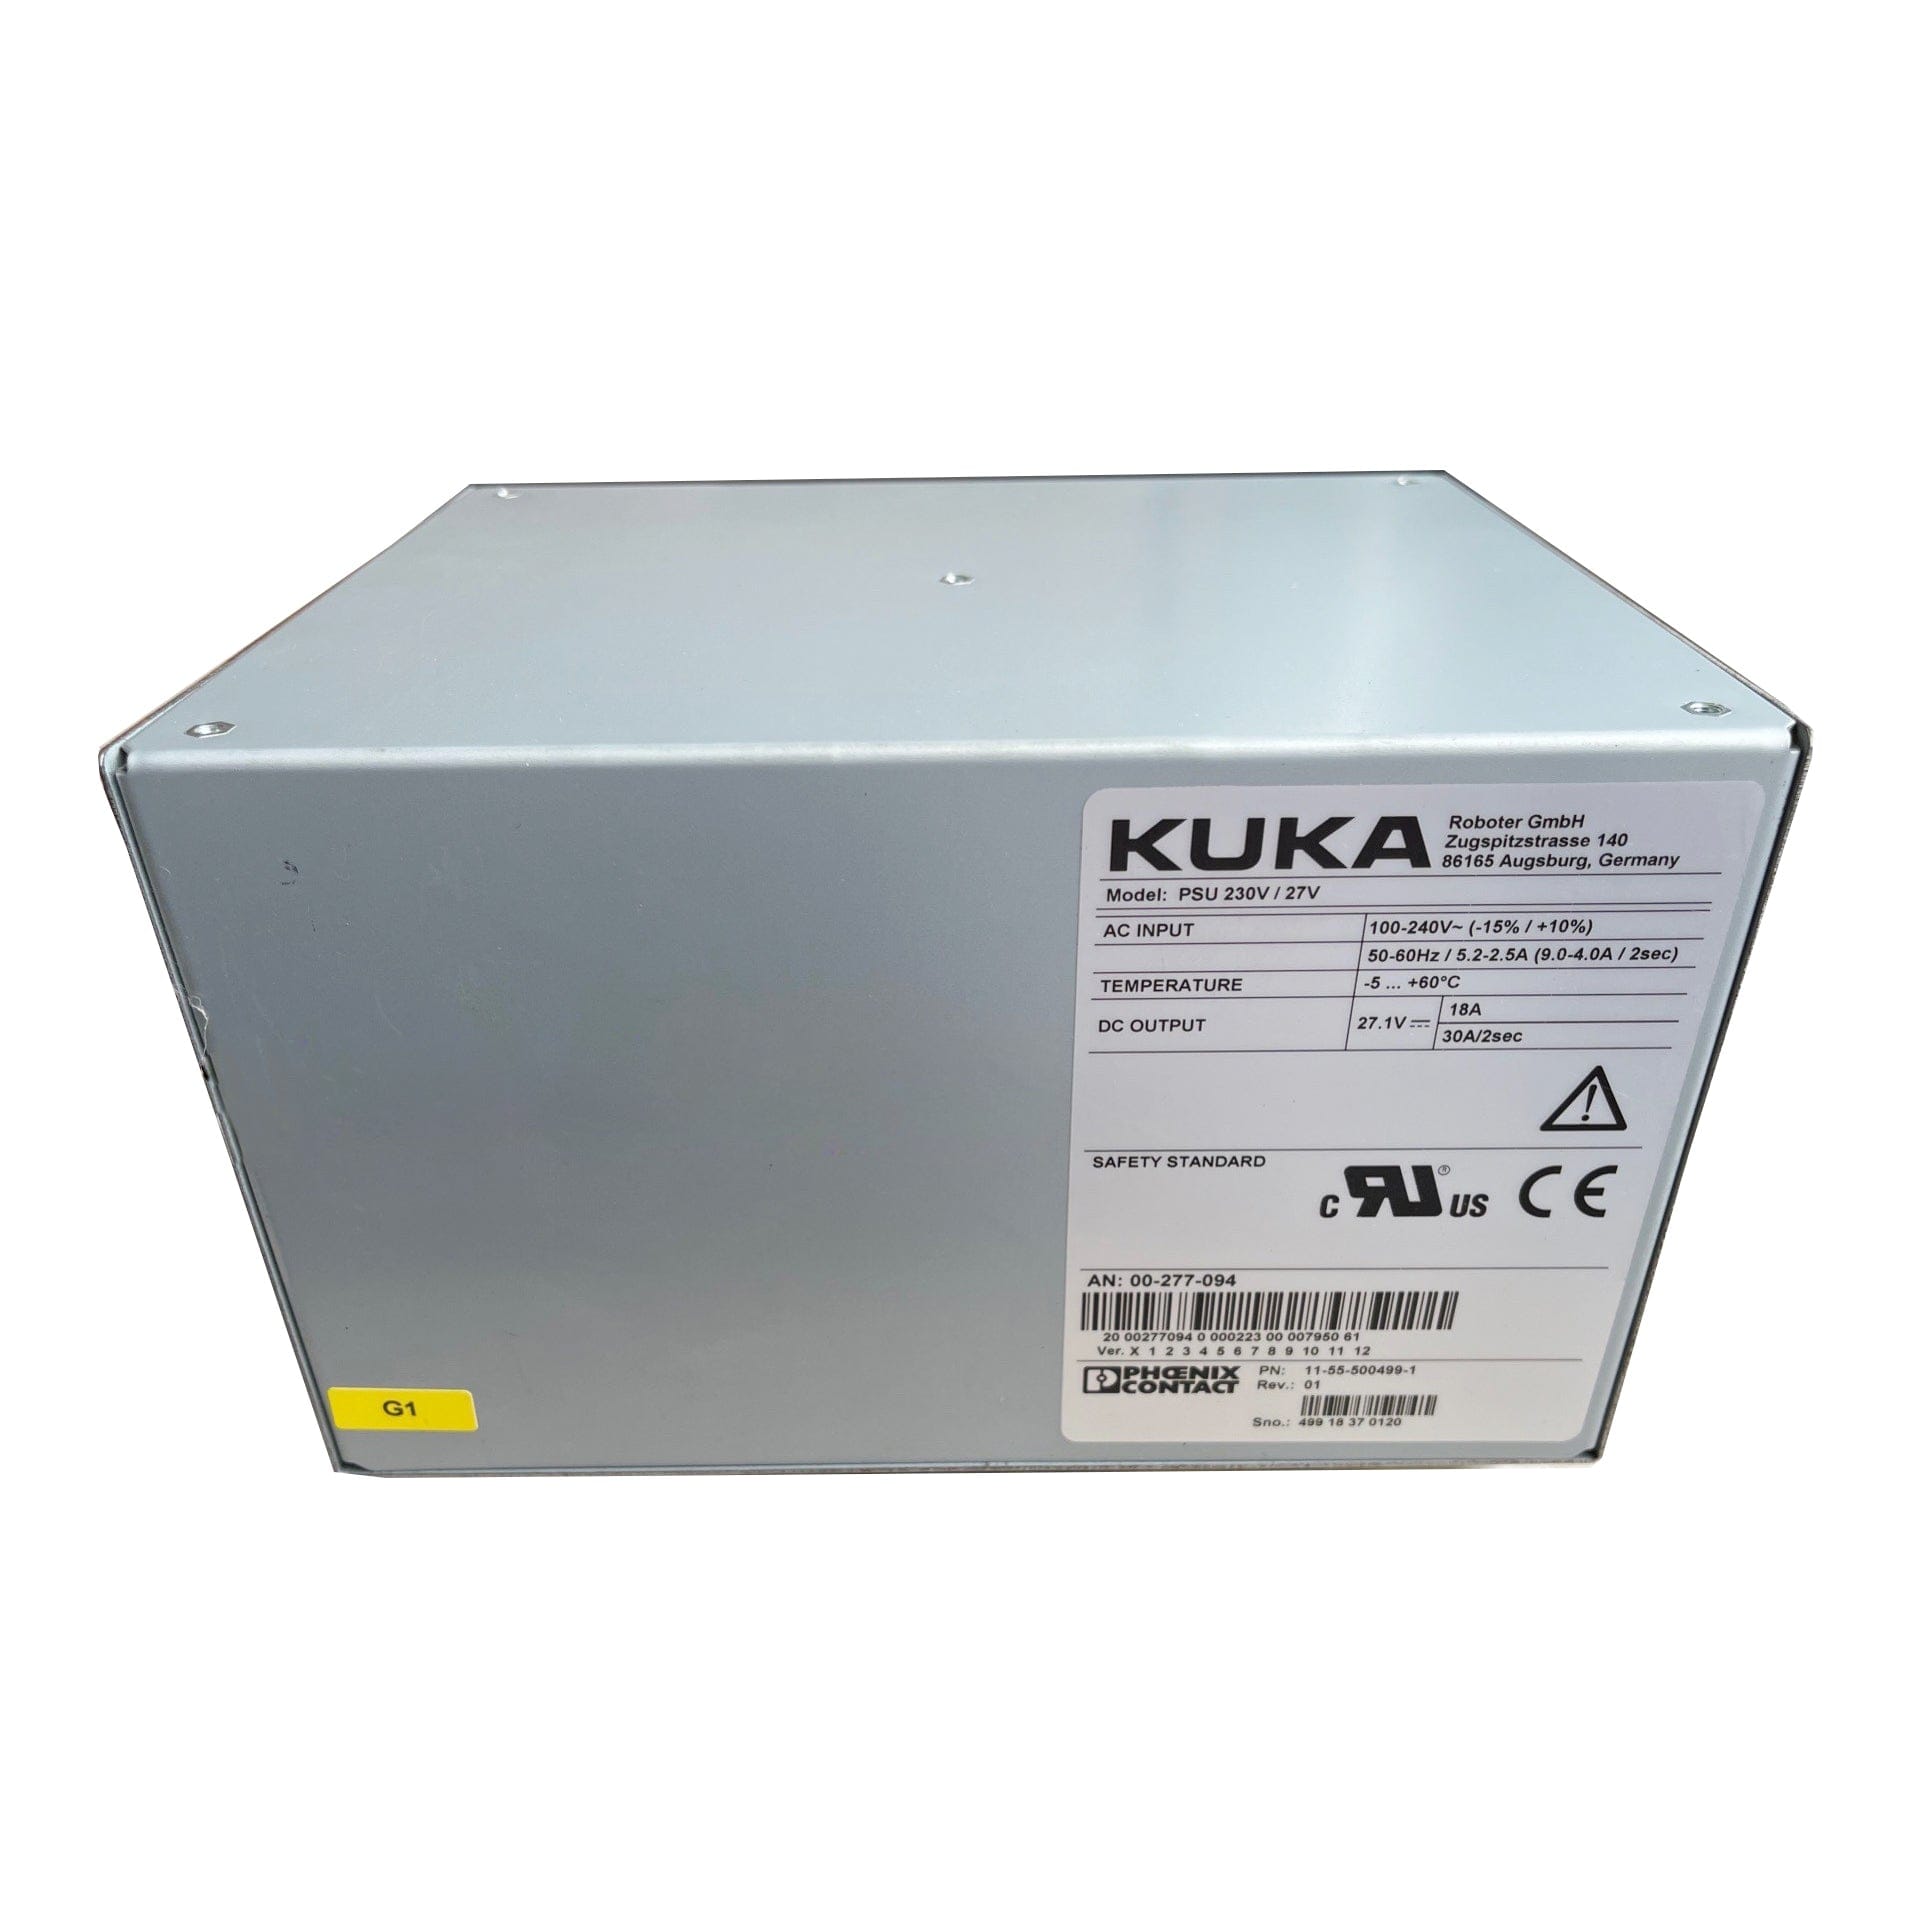 Kuka Robot 00-277-094 00277094 Power Supply